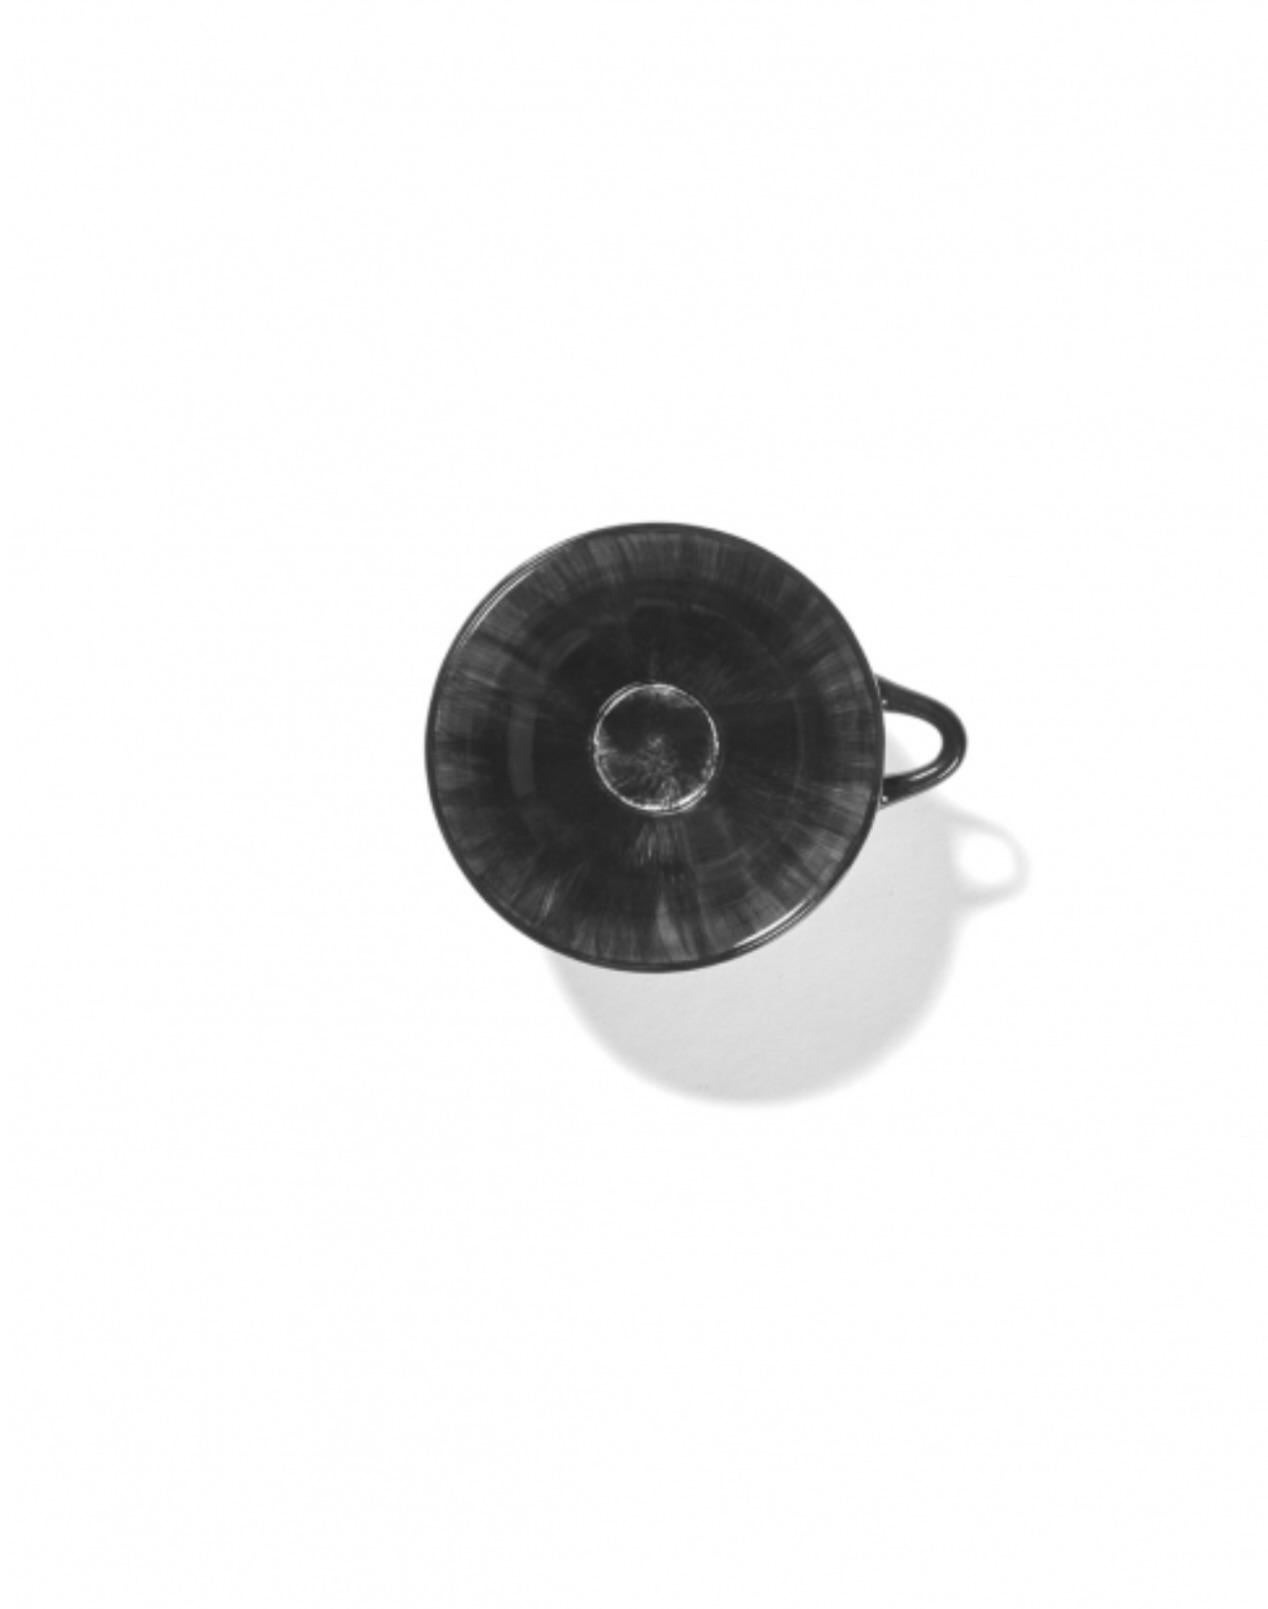 Set aus zwei handbemalten 11-Zentimeter-Porzellanbechern von Ann Demeulemeester. Diese Tassen haben eine glänzende schwarze Glasur auf einem cremefarbenen Boden. Der Kontrast zwischen matt und glänzend, aber auch der Kontrast zwischen Schwarz und